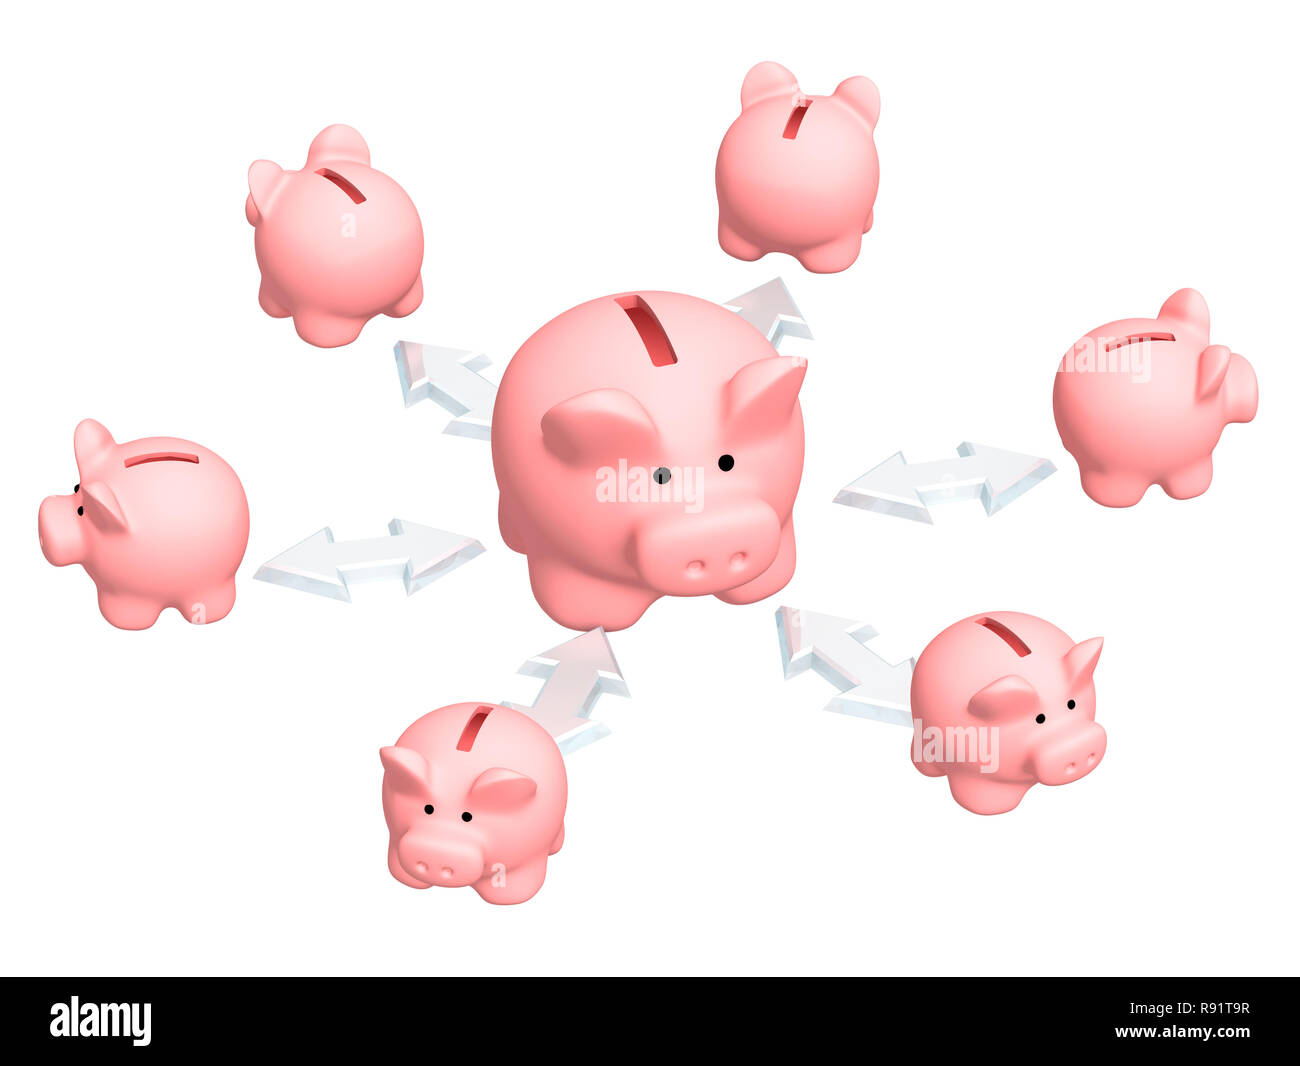 Image conceptuelle - distribution de finances publiques Banque D'Images